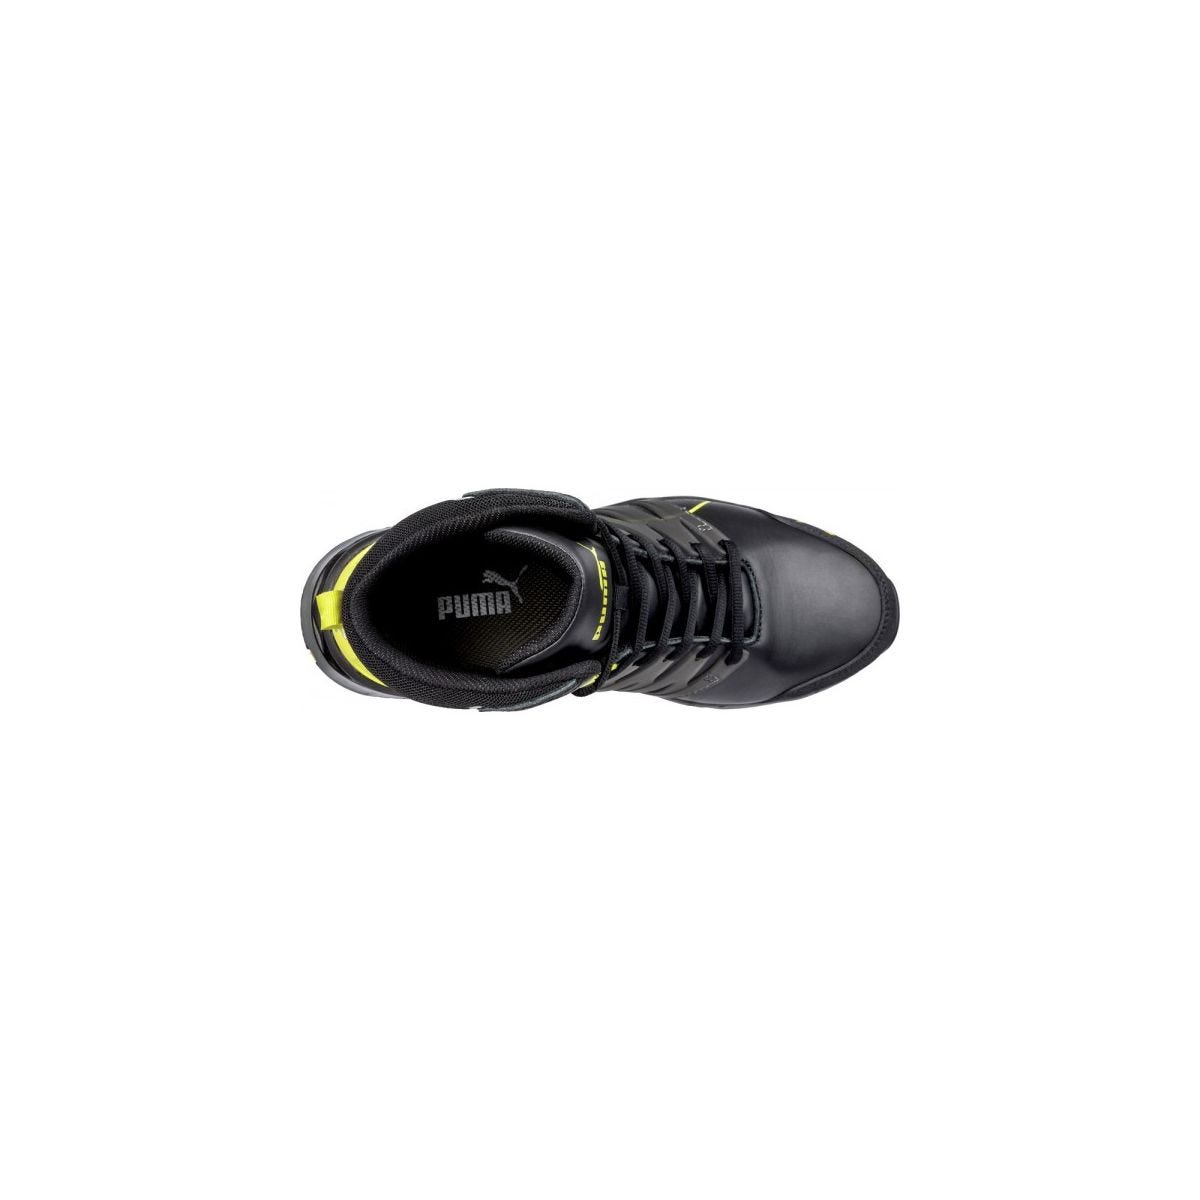 Chaussures de sécurité Velocity 2.0 YELLOW MID S3 - Puma - Taille 44 3